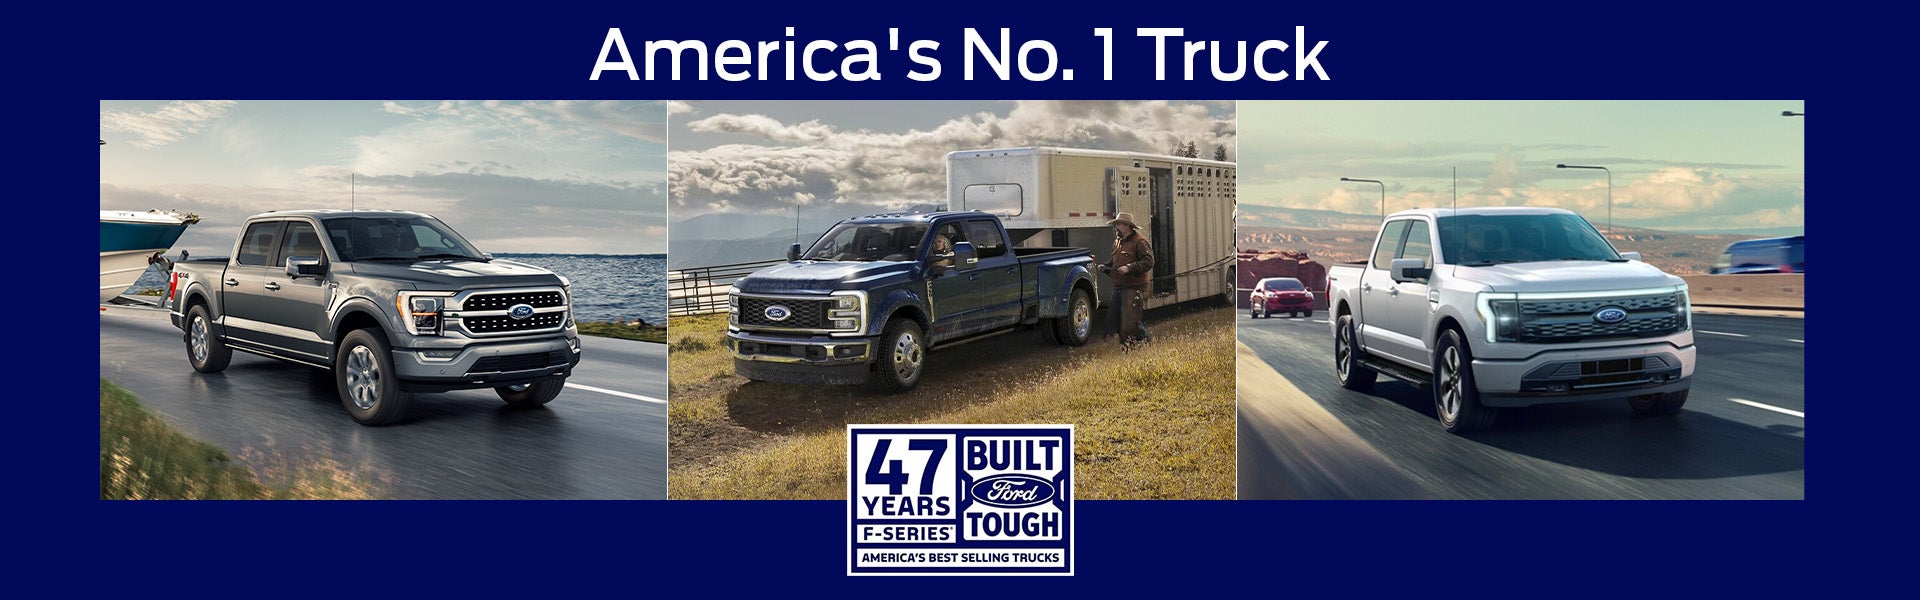 America's No. 1 Truck